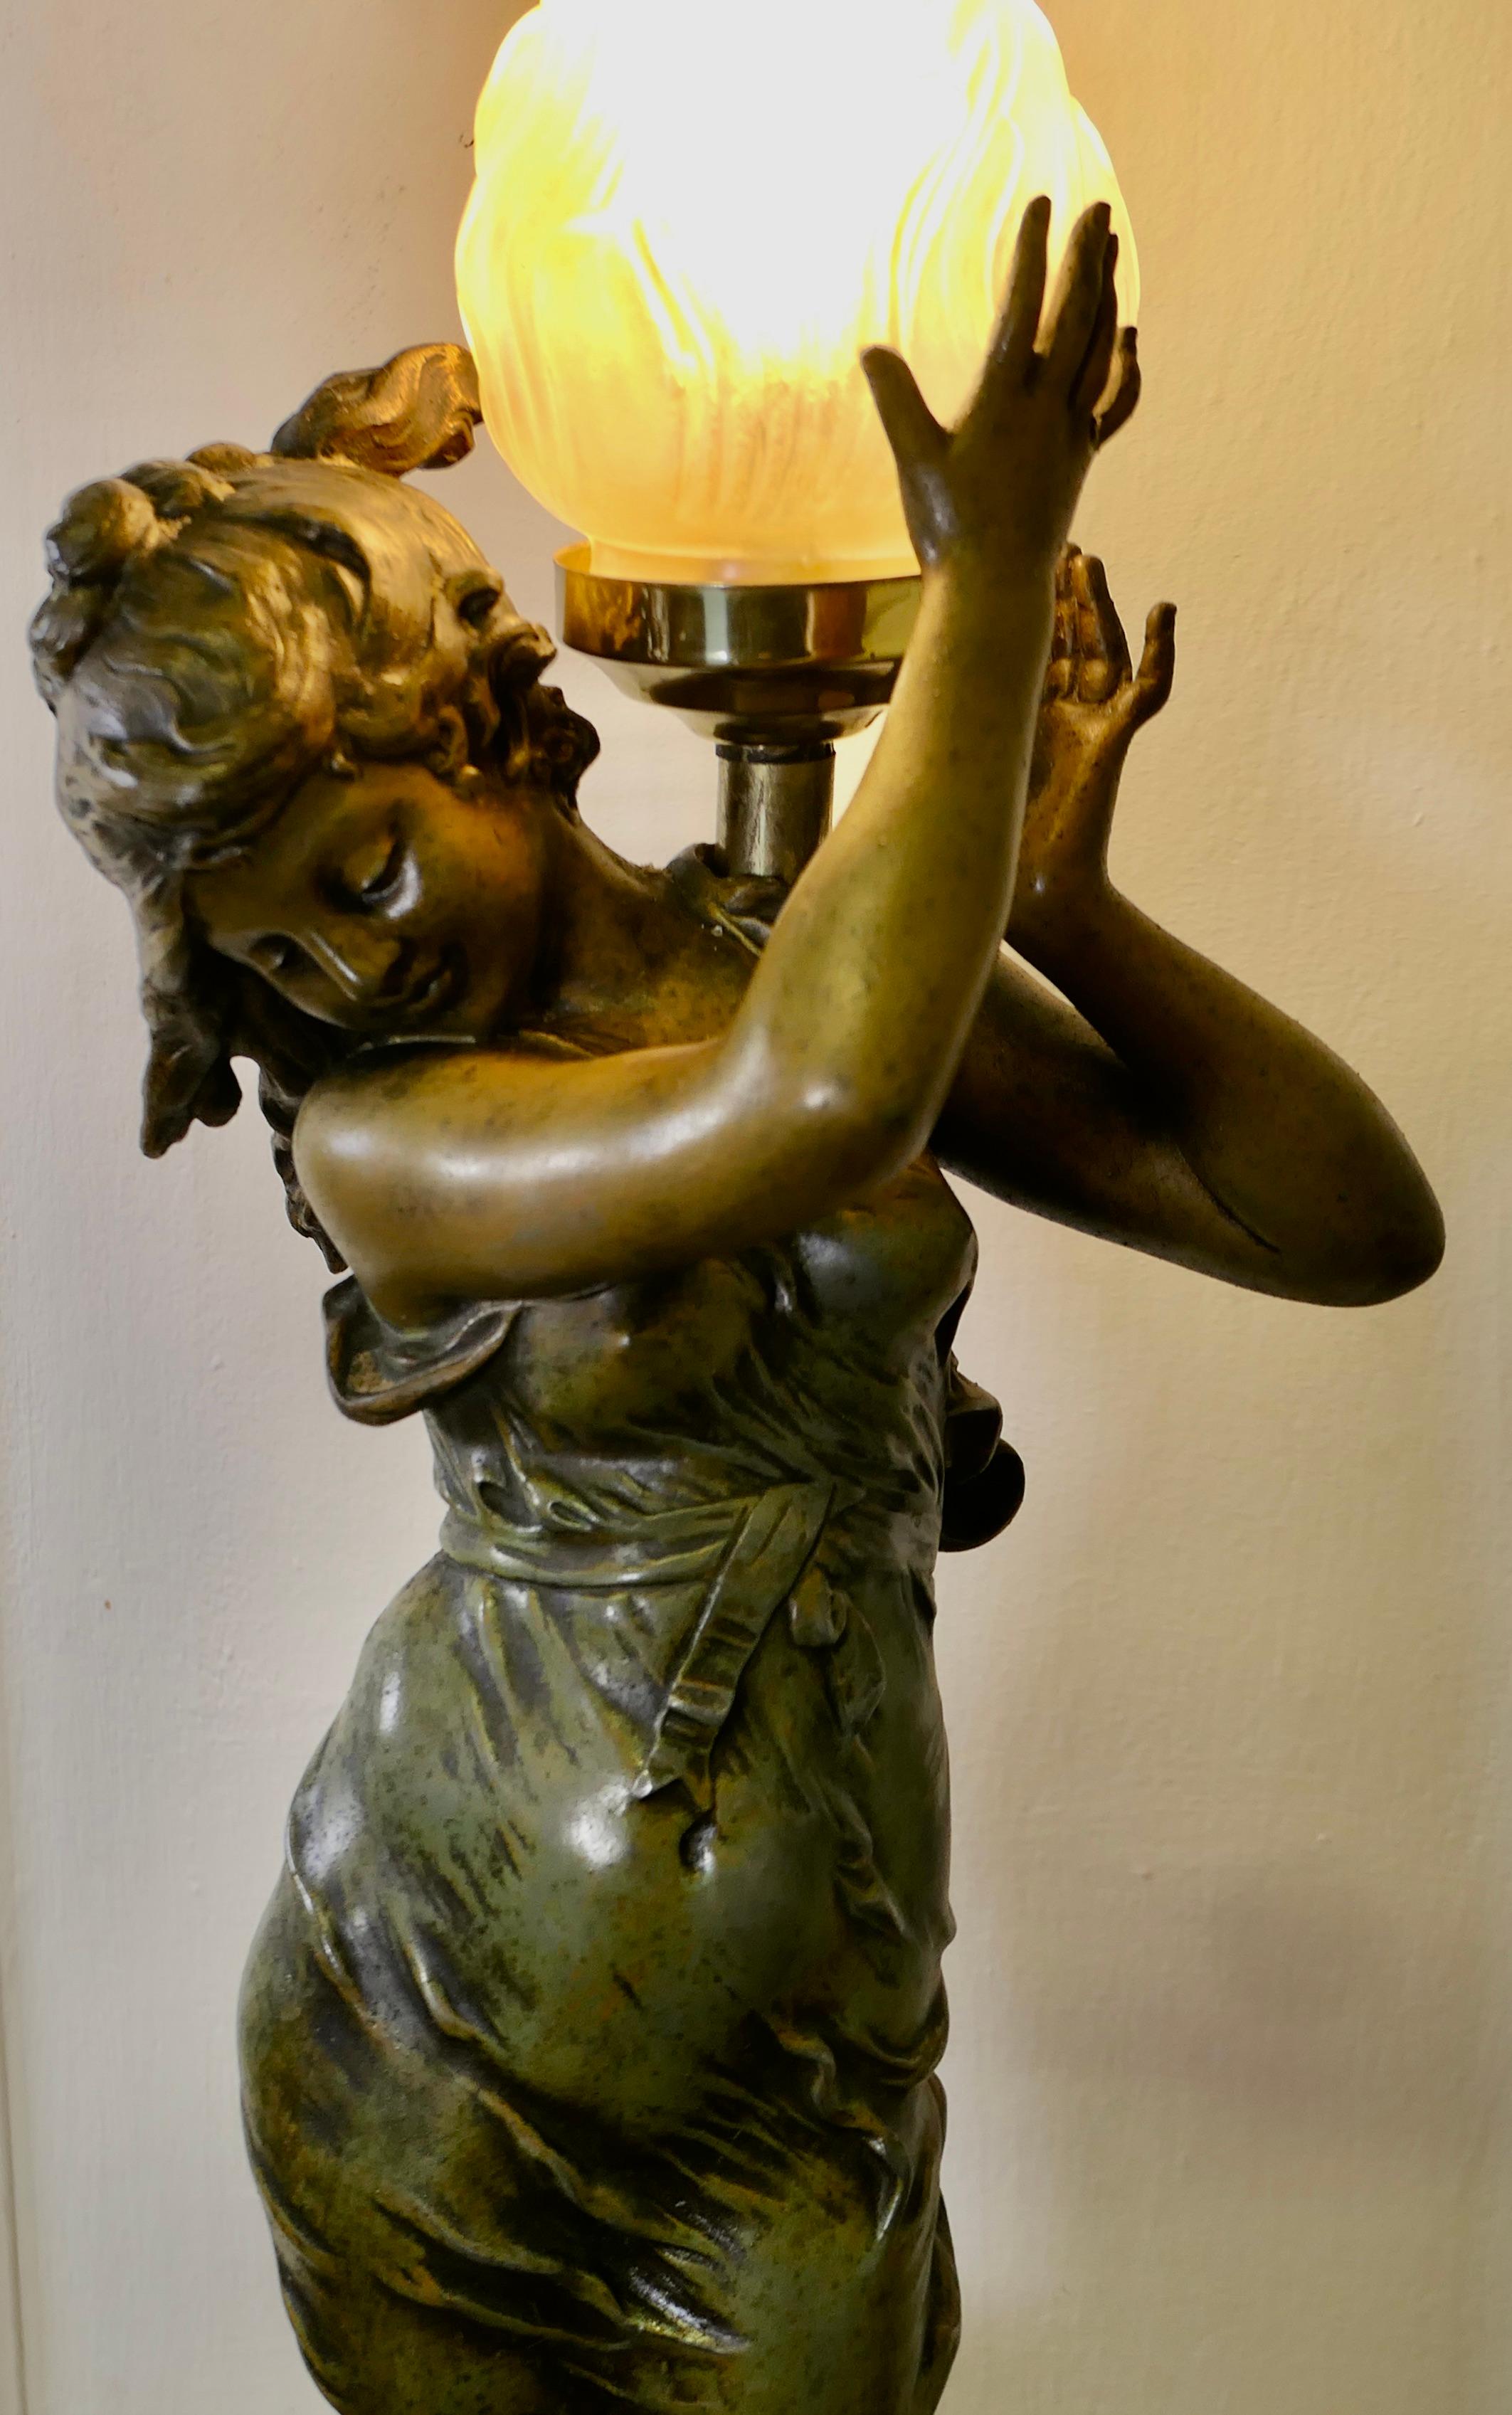 Lampe figurative Art Nouveau signée Auguste Moreau 

Charmante lampe en forme de nymphe d'eau ou de Naide, posée sur un socle en marbre et peinte à froid en vert mousse et or. 
La lampe fonctionne parfaitement, elle est en bon état et le câblage est